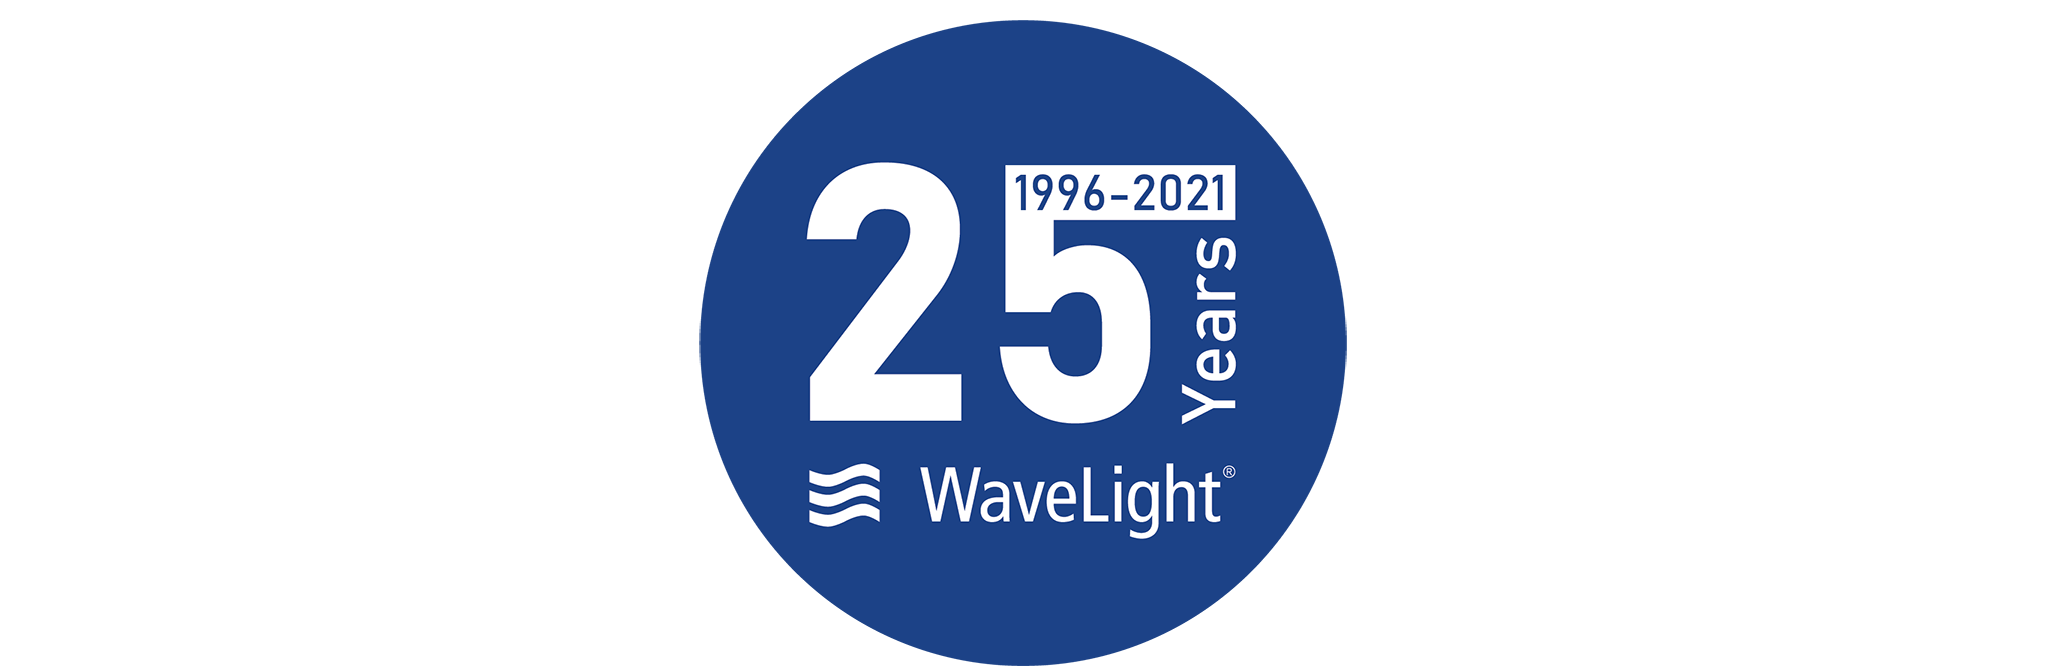 25 Years of Wavelight